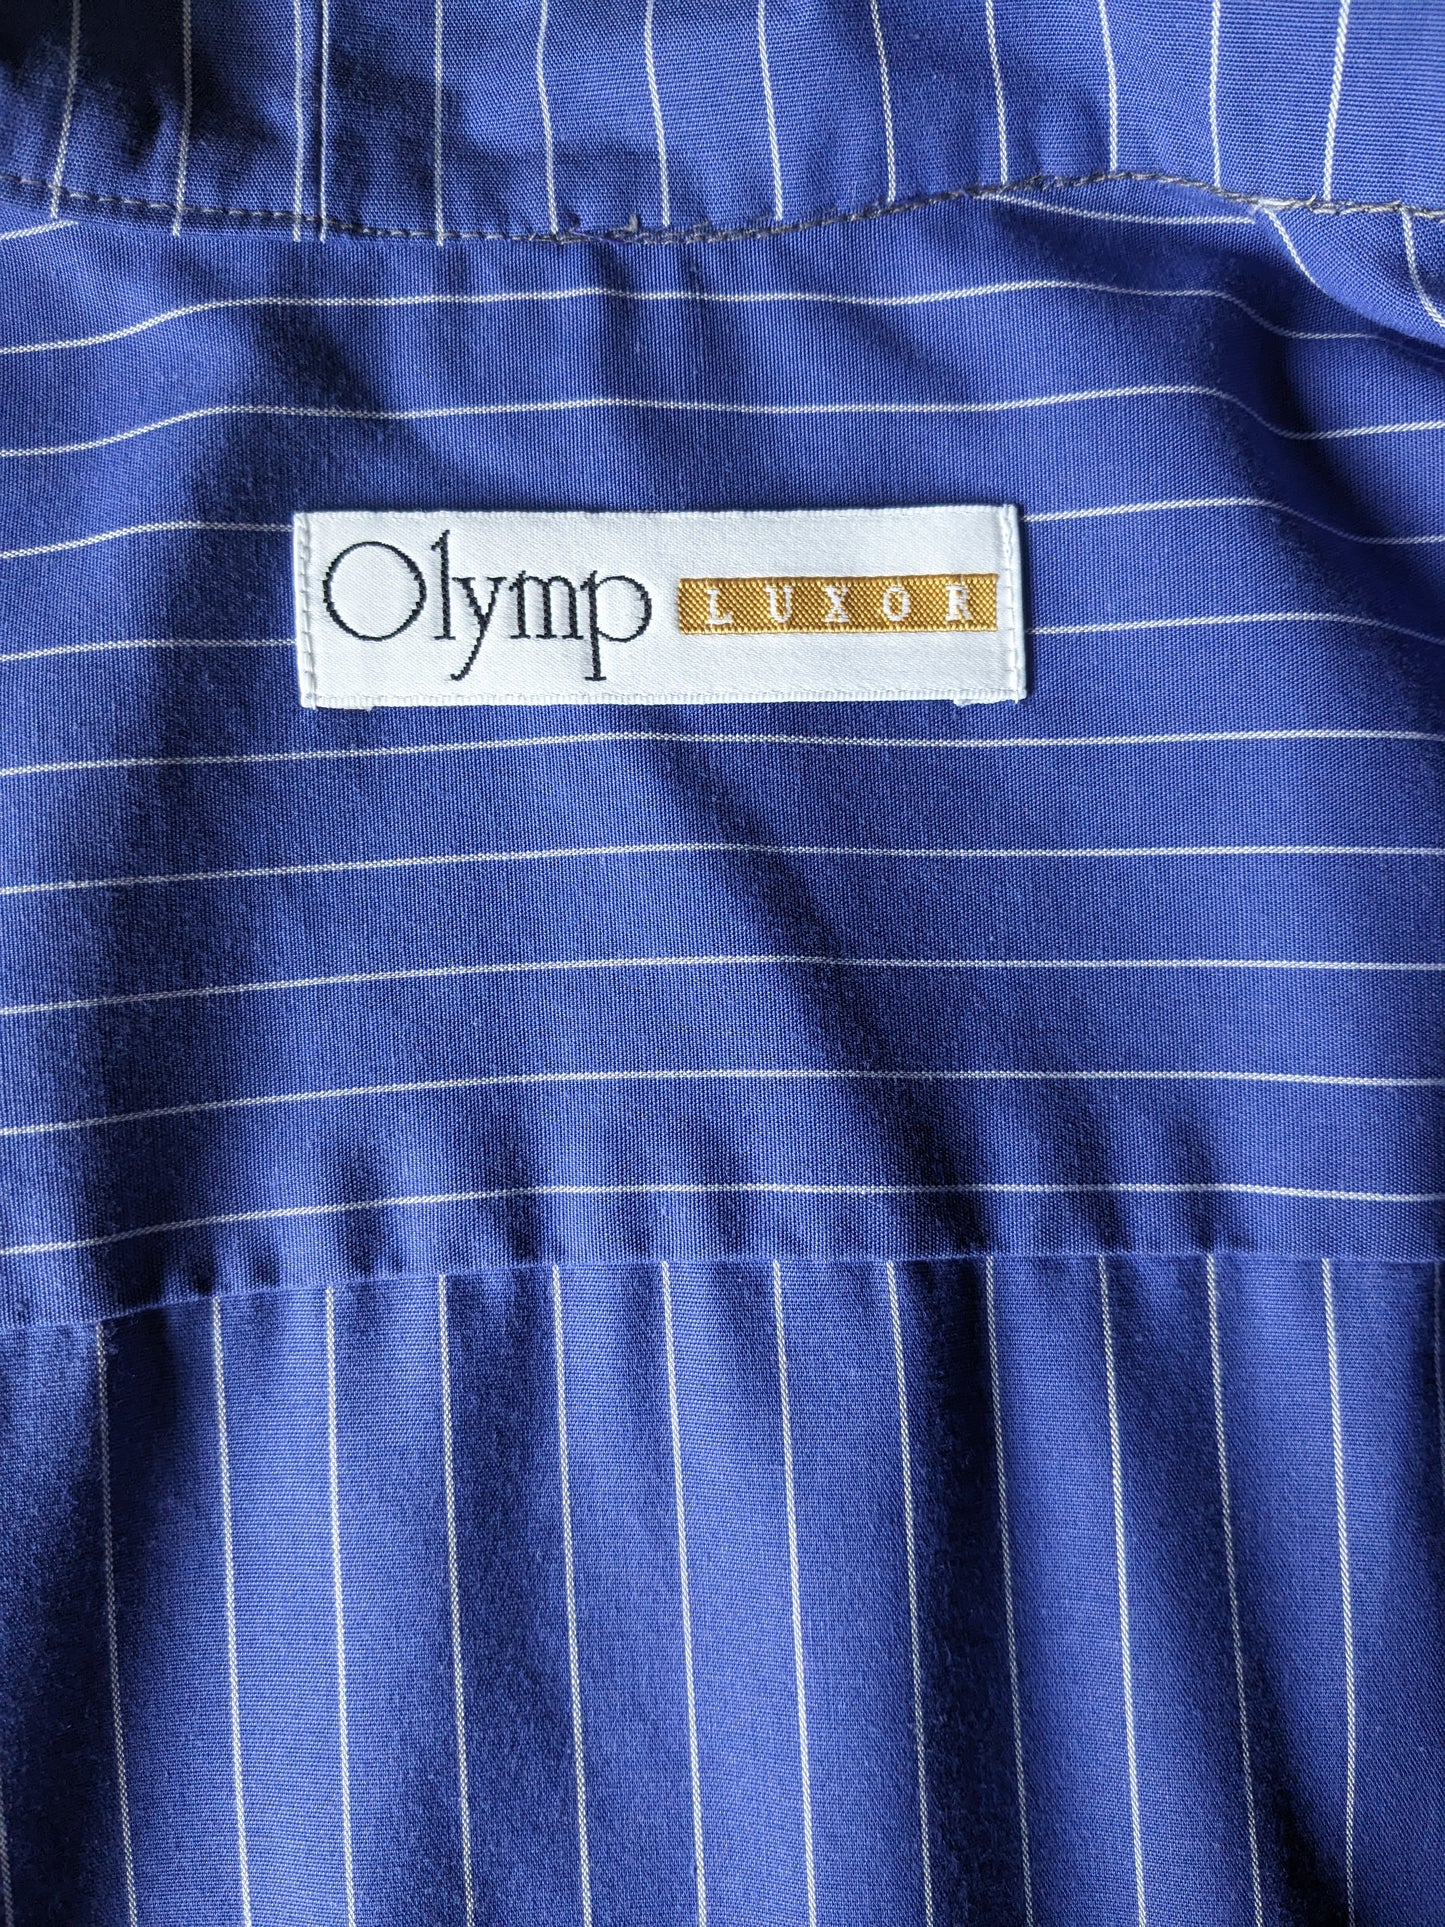 Vintage Olymp Luxor overhemd met mao / boeren- / opstaande kraag. Blauw Wit gestreept. Maat L.